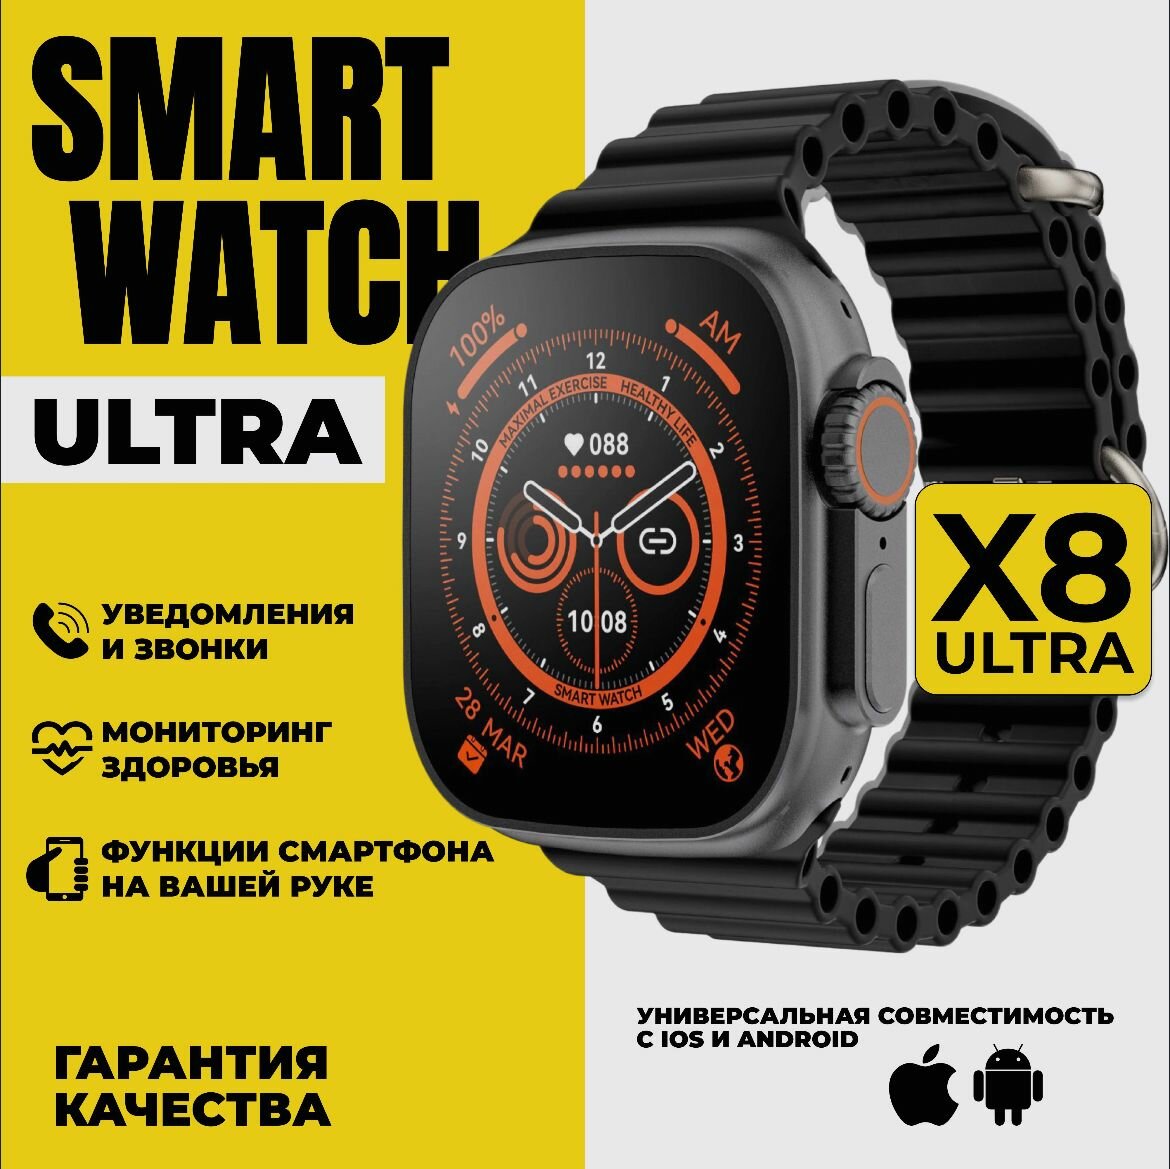 Умные часы Smart Watch X8 Ultra черный / наручные электронные сенсорные мужские женские смартчасы / спортивный фитнес браслет с блютуз для смартфона телефона / шагомер / пульсометр / мониторинг сна